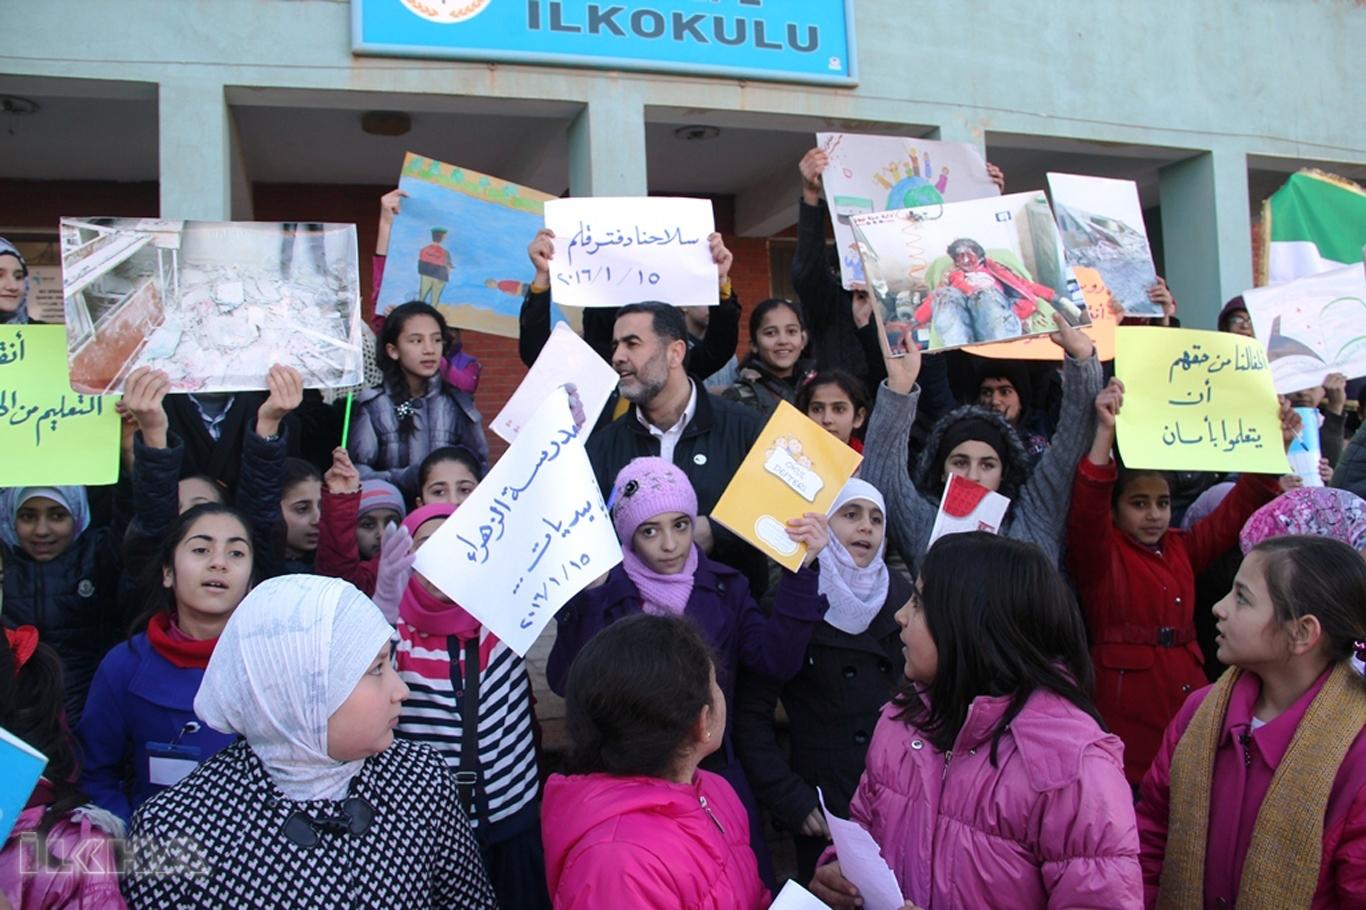 Suriyeli sığınmacıların yarısına yakını okula gidemiyor